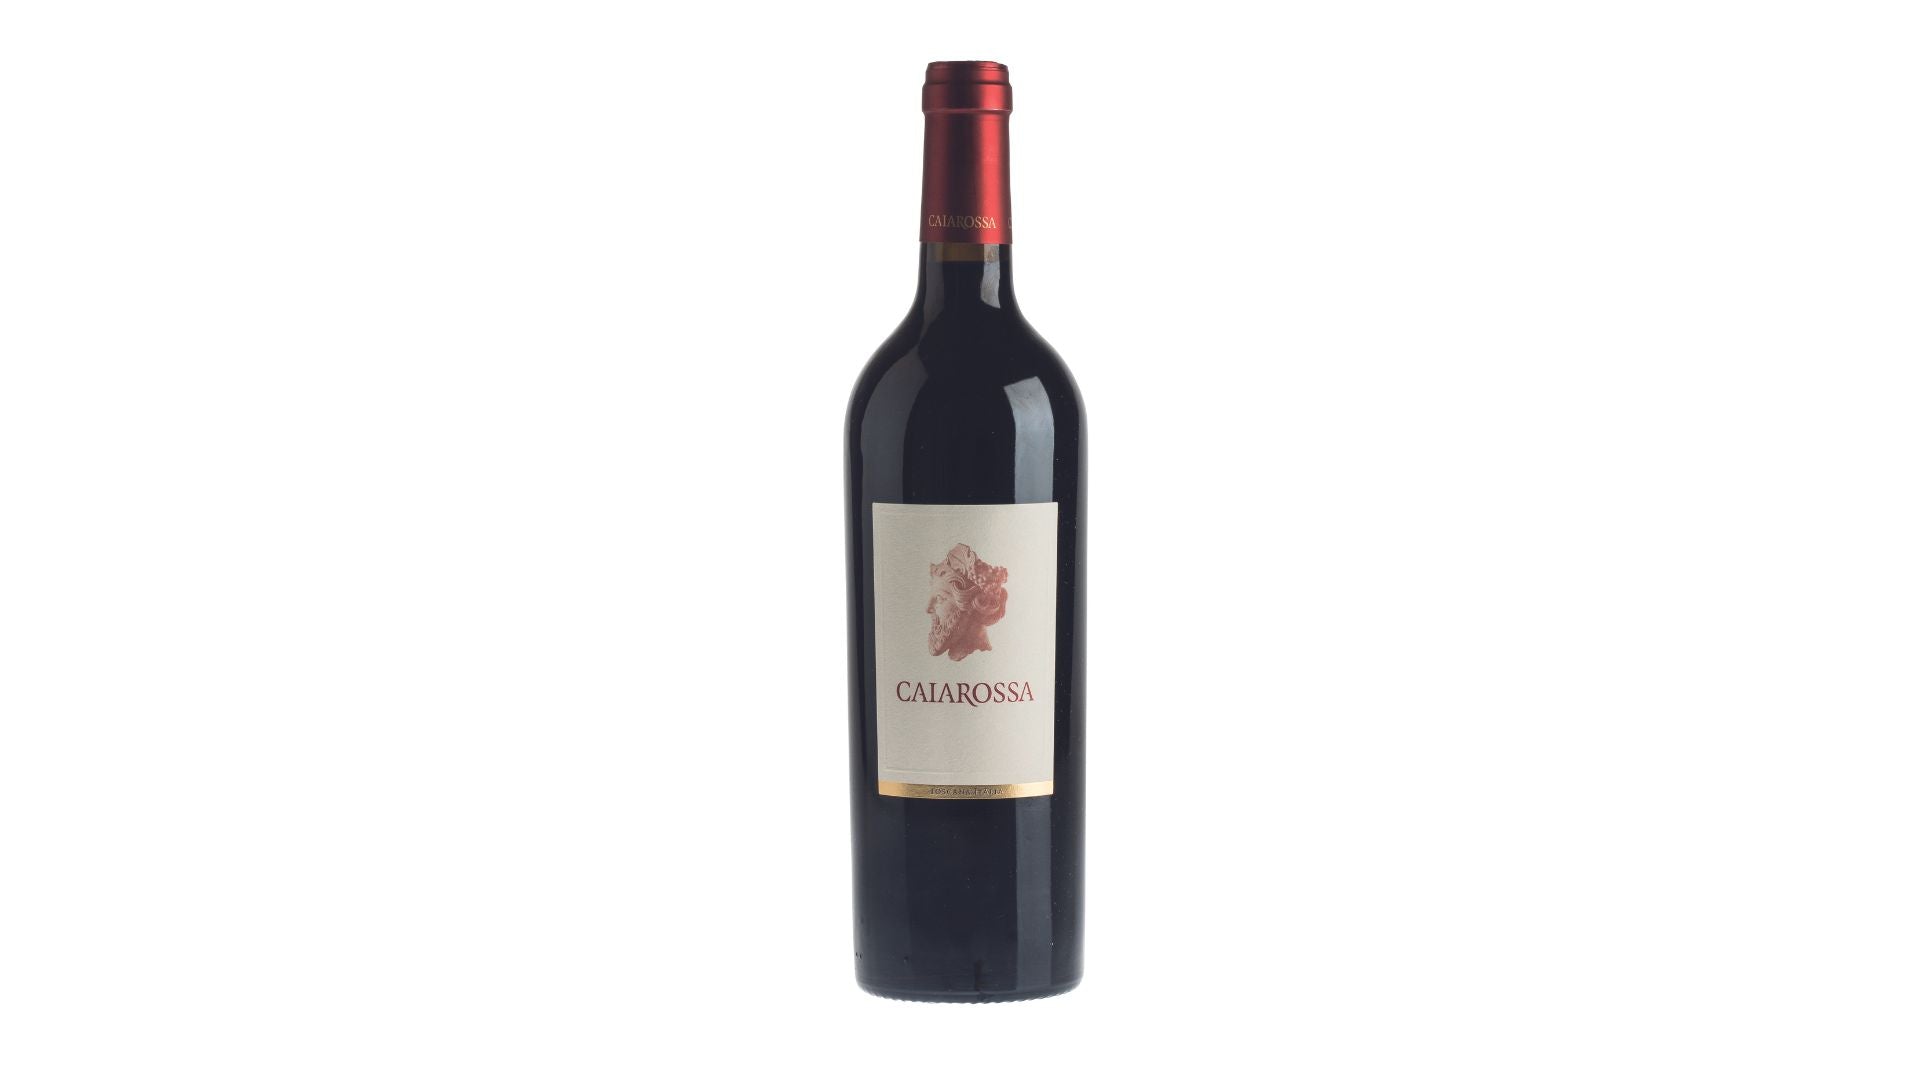 Caiarossa 2019 The Wine Gate Shop